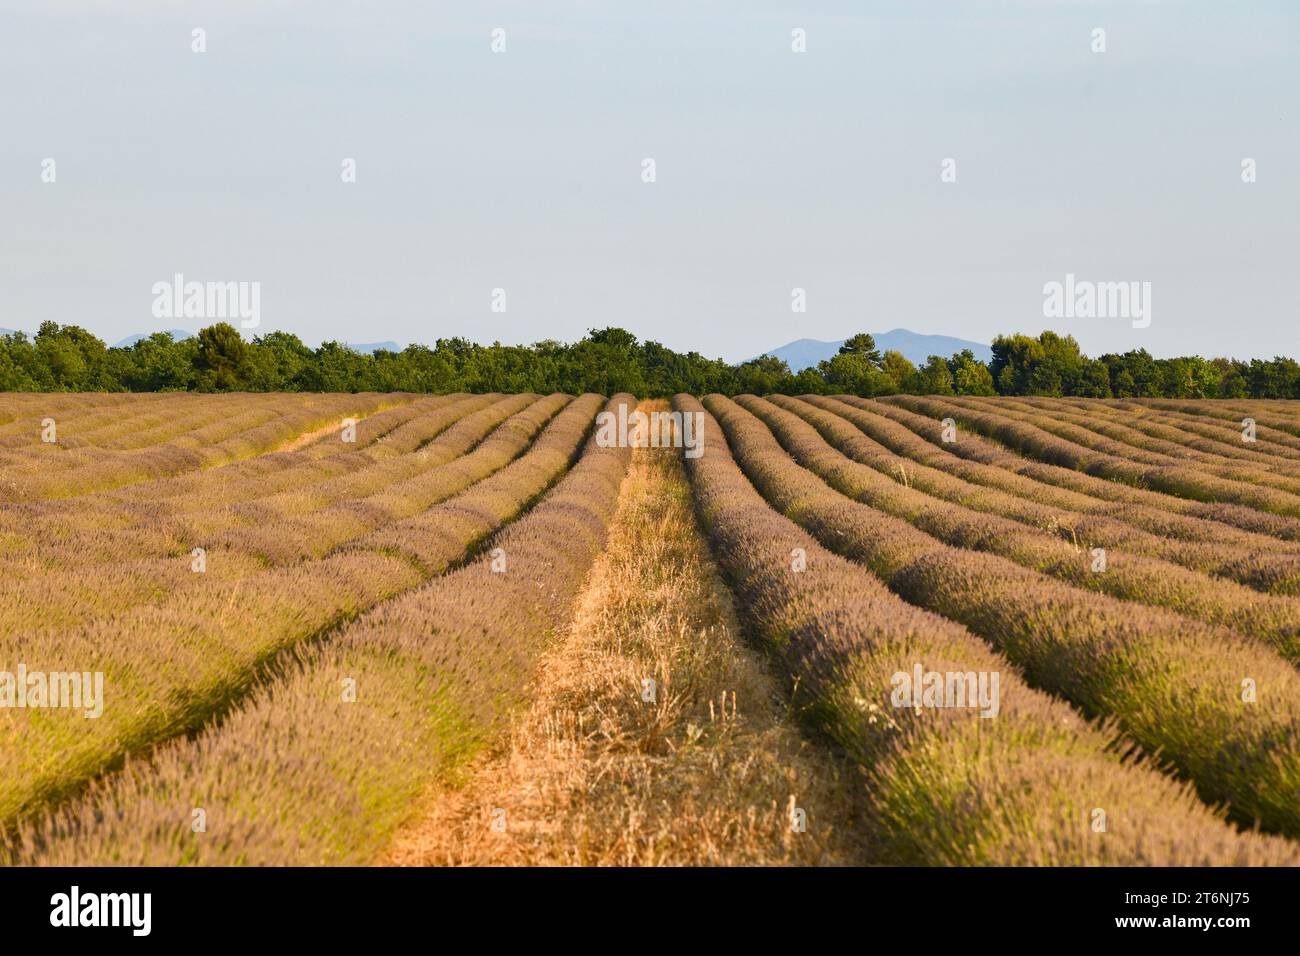 Lavender field along the Plateau de Valensole, Brunet, Alpes-de-Haute-Provence, France, Europe. Stock Photo